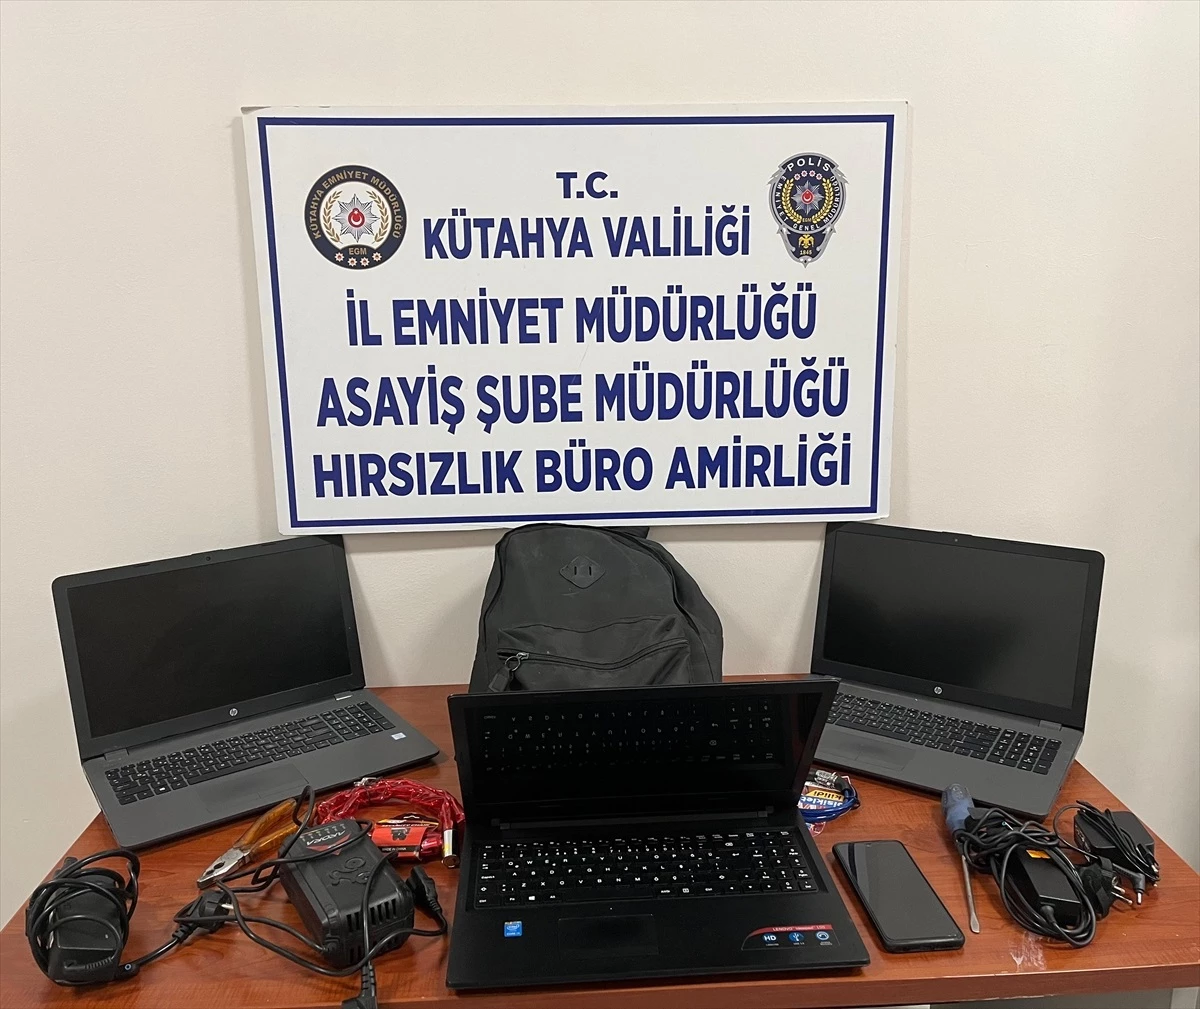 Kütahya, Bursa ve Yalova’da Okullardan Dizüstü Bilgisayar Çalan Zanlı Gözaltına Alındı